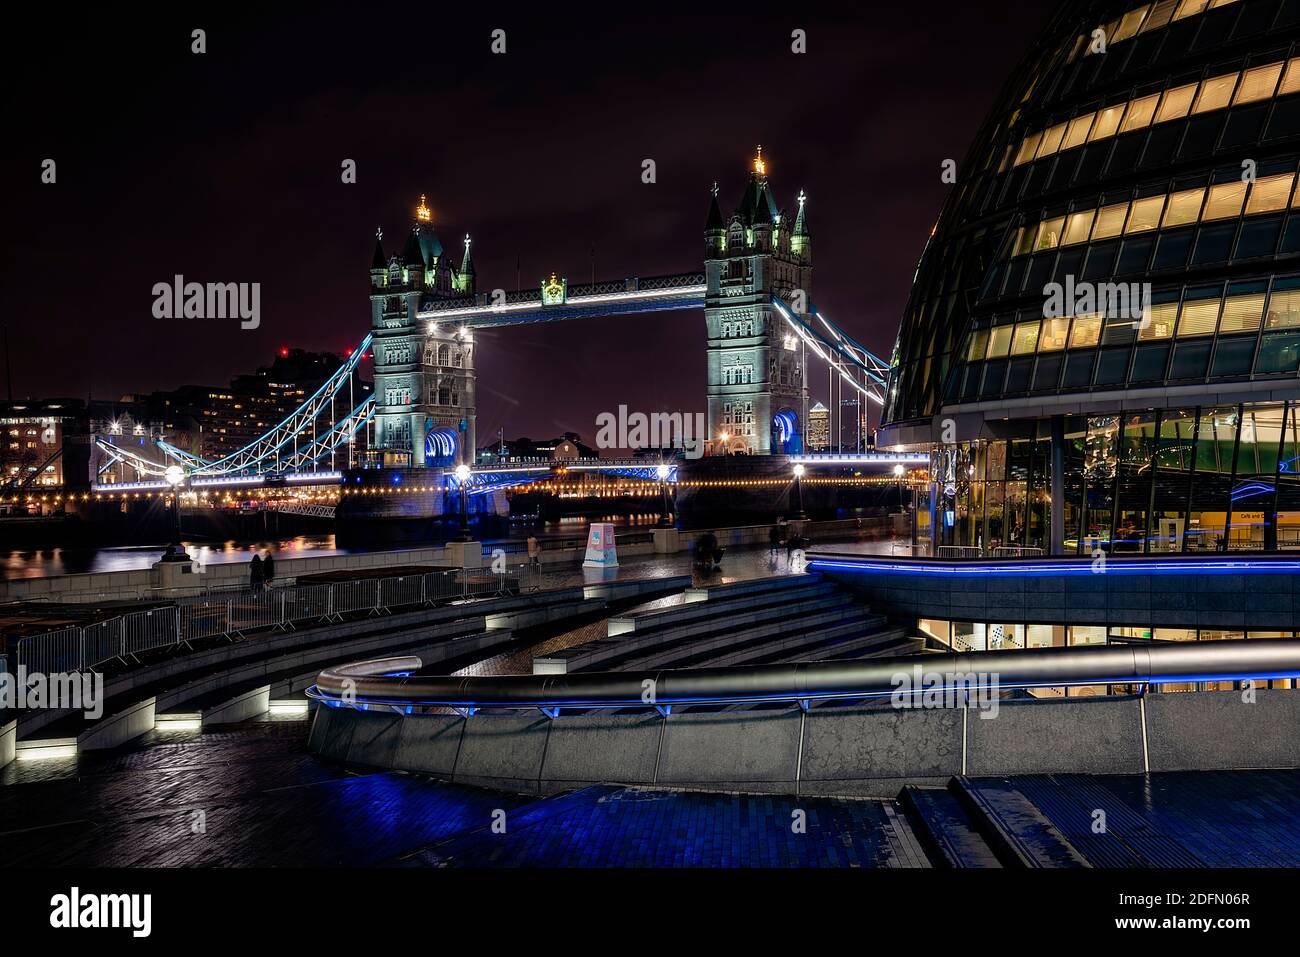 Londres, Royaume-Uni - 2020 janvier : Tower Bridge et promenade le long de l'amphithéâtre Scoop avec le bâtiment moderne de l'hôtel de ville. Illuminer les rues de la ville a Banque D'Images